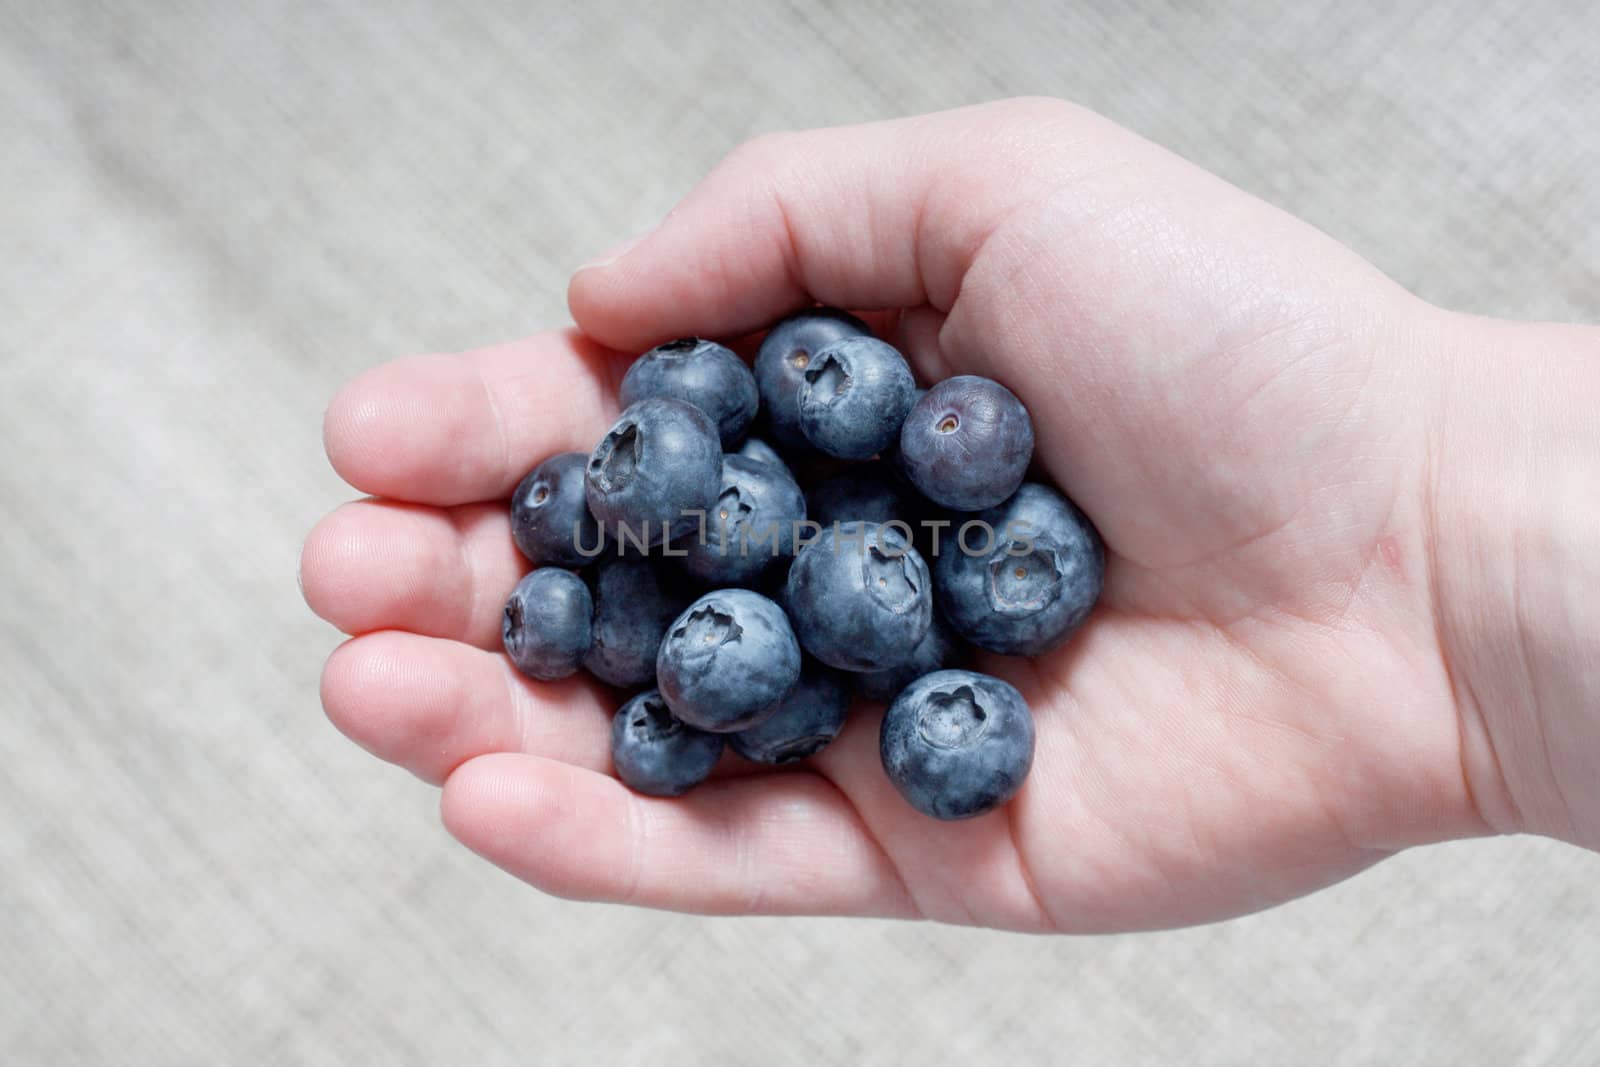 Handful of blueberries by leeser